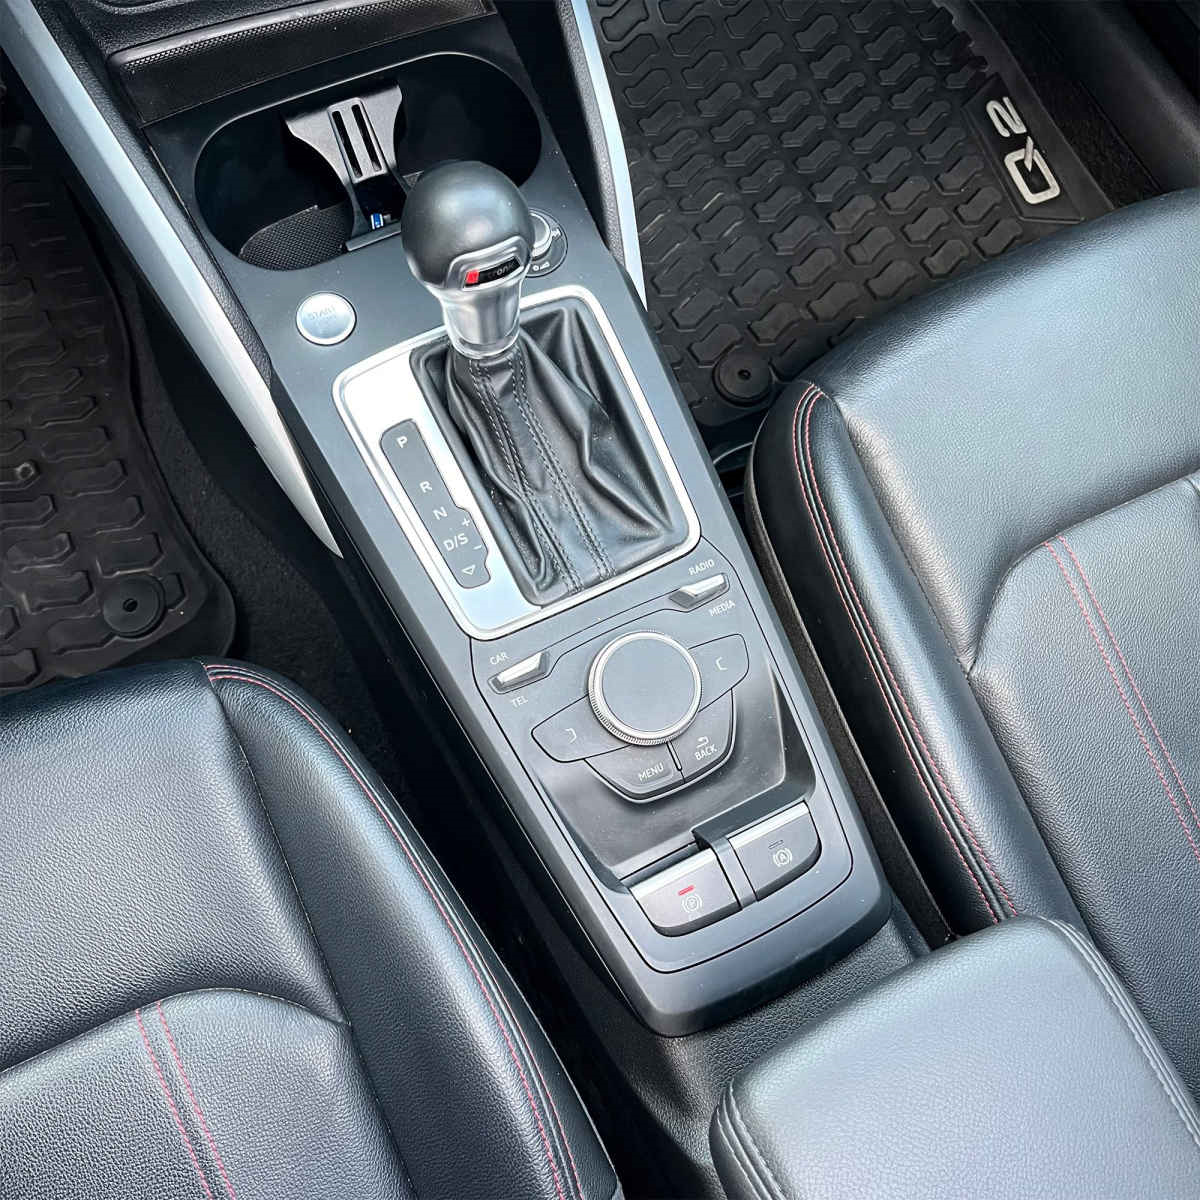 Audi Q2 2019